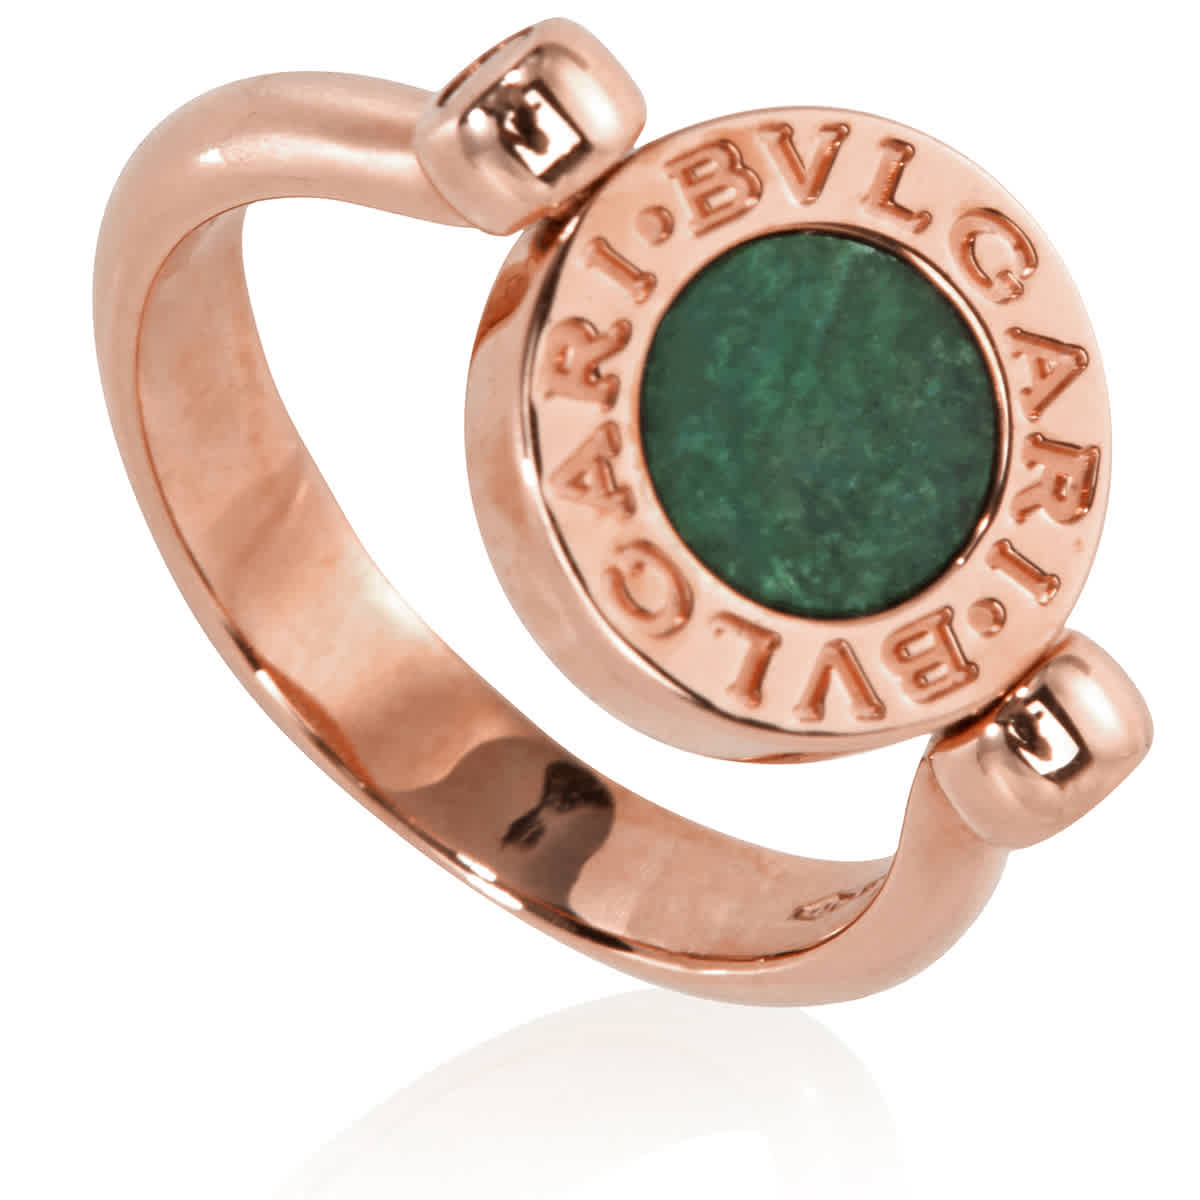 Bvlgari 18k Rose Gold Flip Ring With Green Jade, Size 56 | eBay